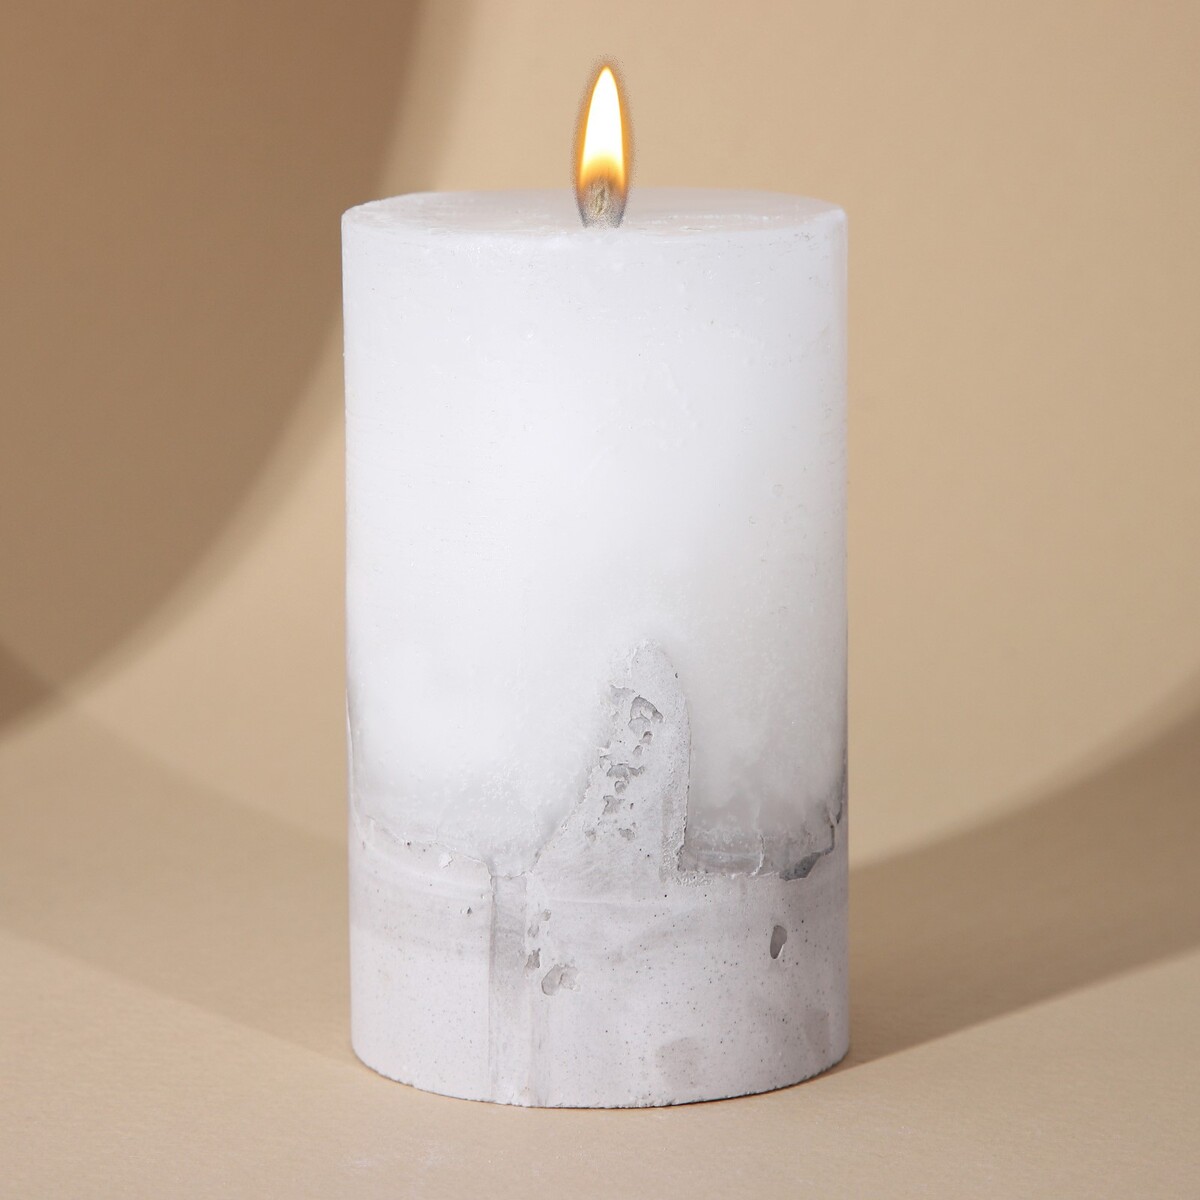 Свеча интерьерная белая с бетоном, 10 х 6 см свеча интерьерная женская фигура белая